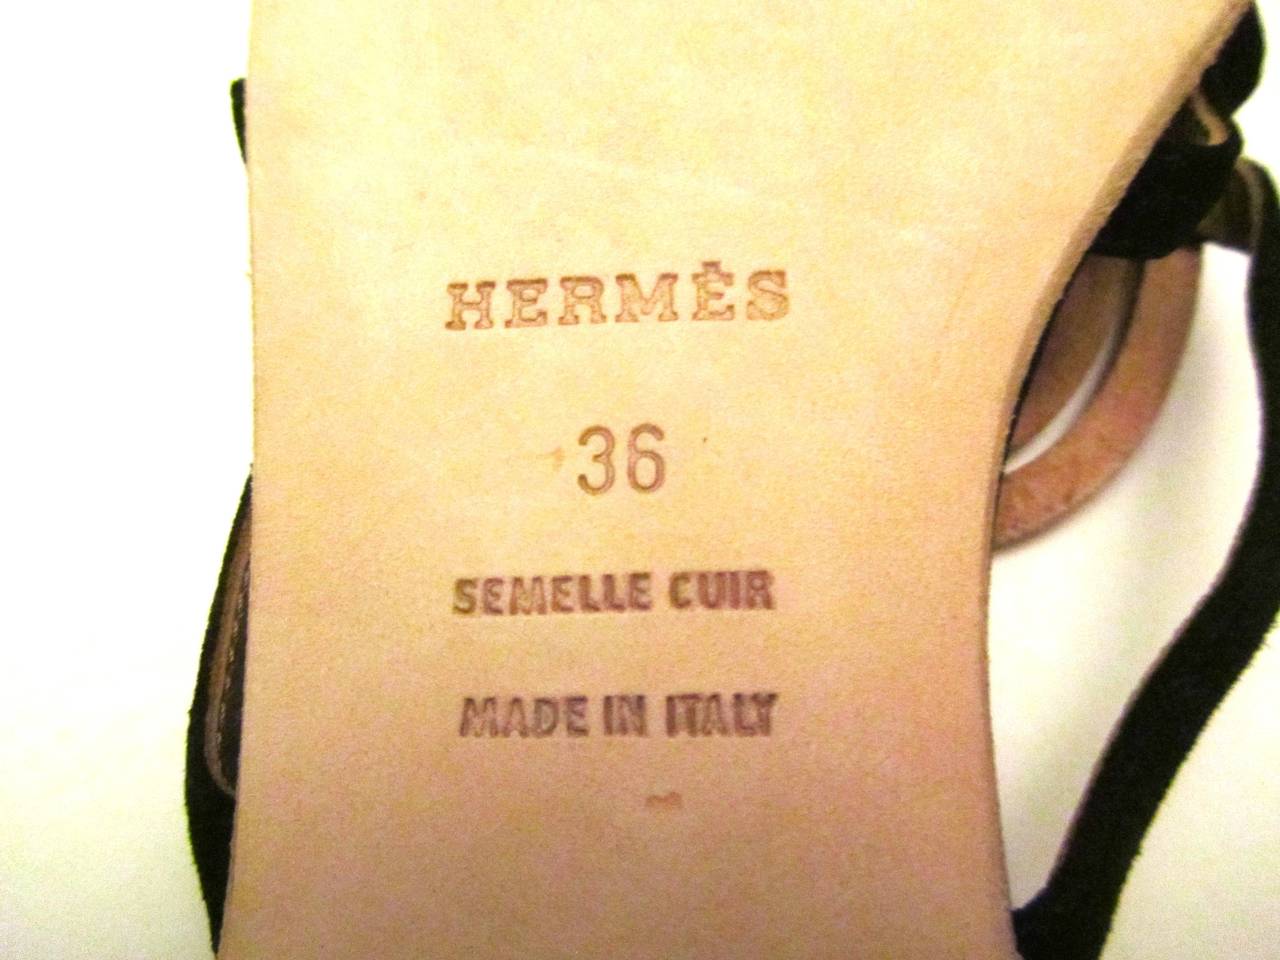 New Hermes Black Suede Leather Flip Flop Sandals - Size 36 1